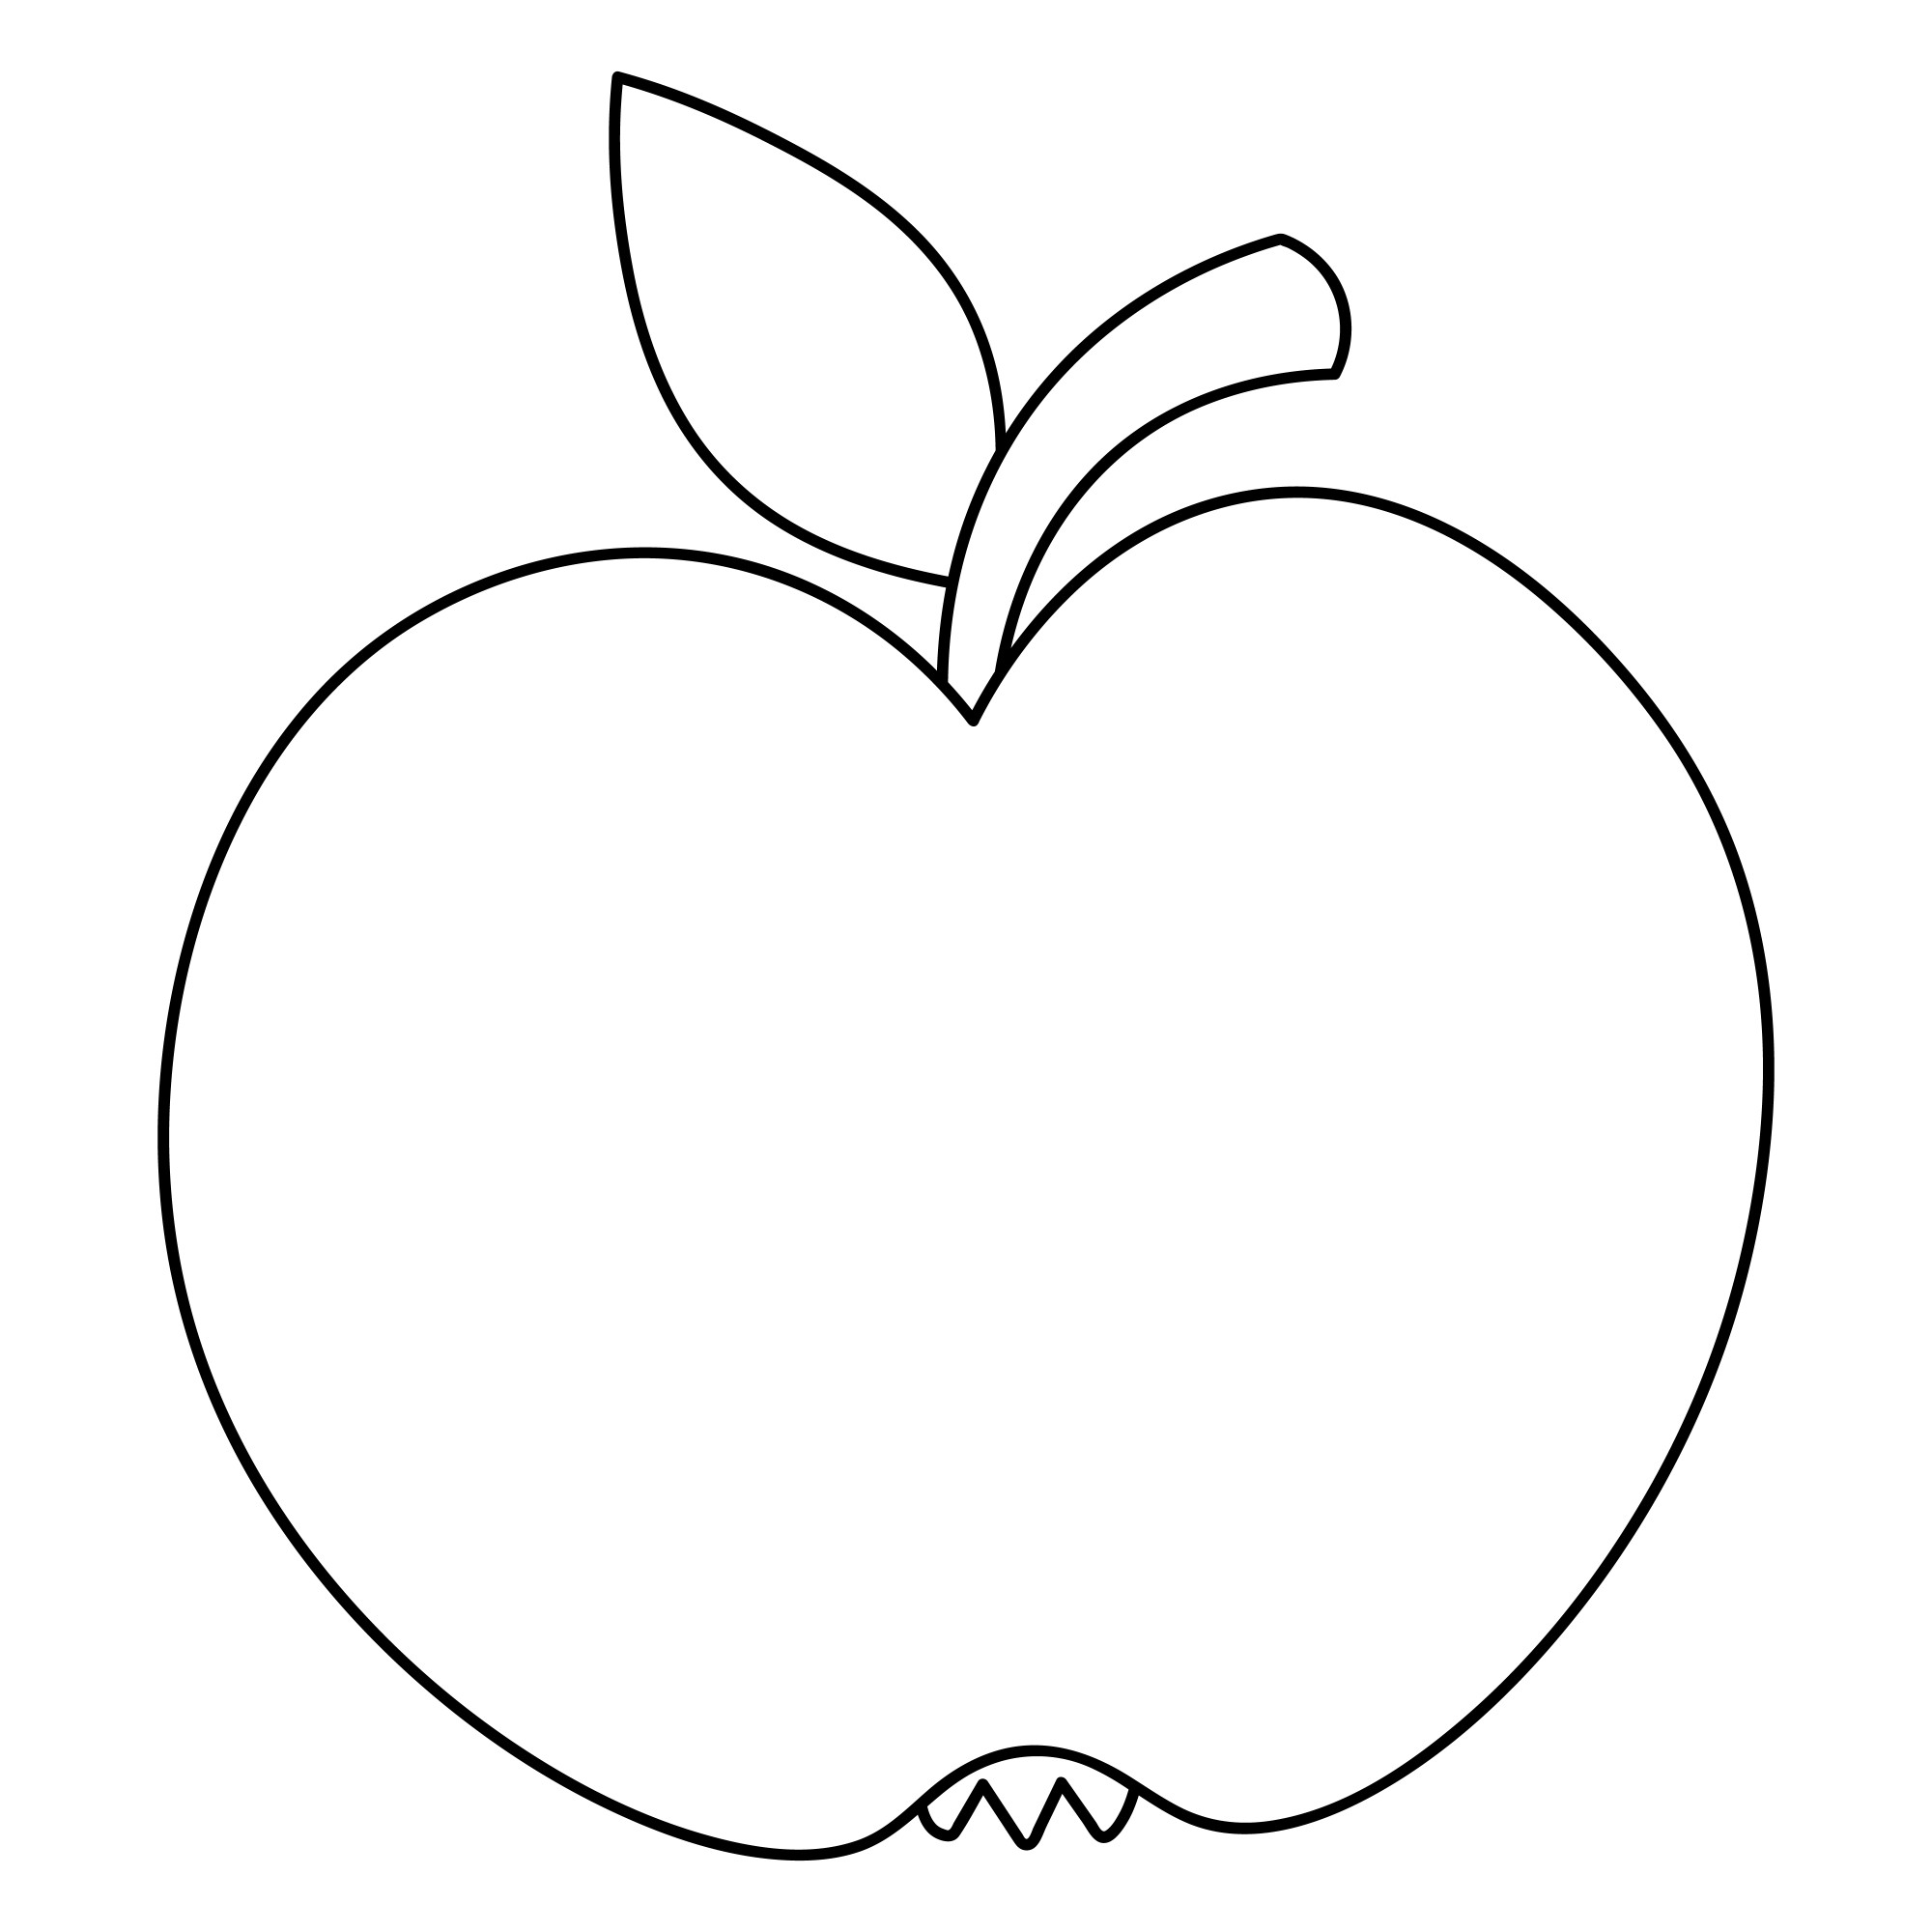 Раскраска для детей: вкусный фрукт яблоко с листиком